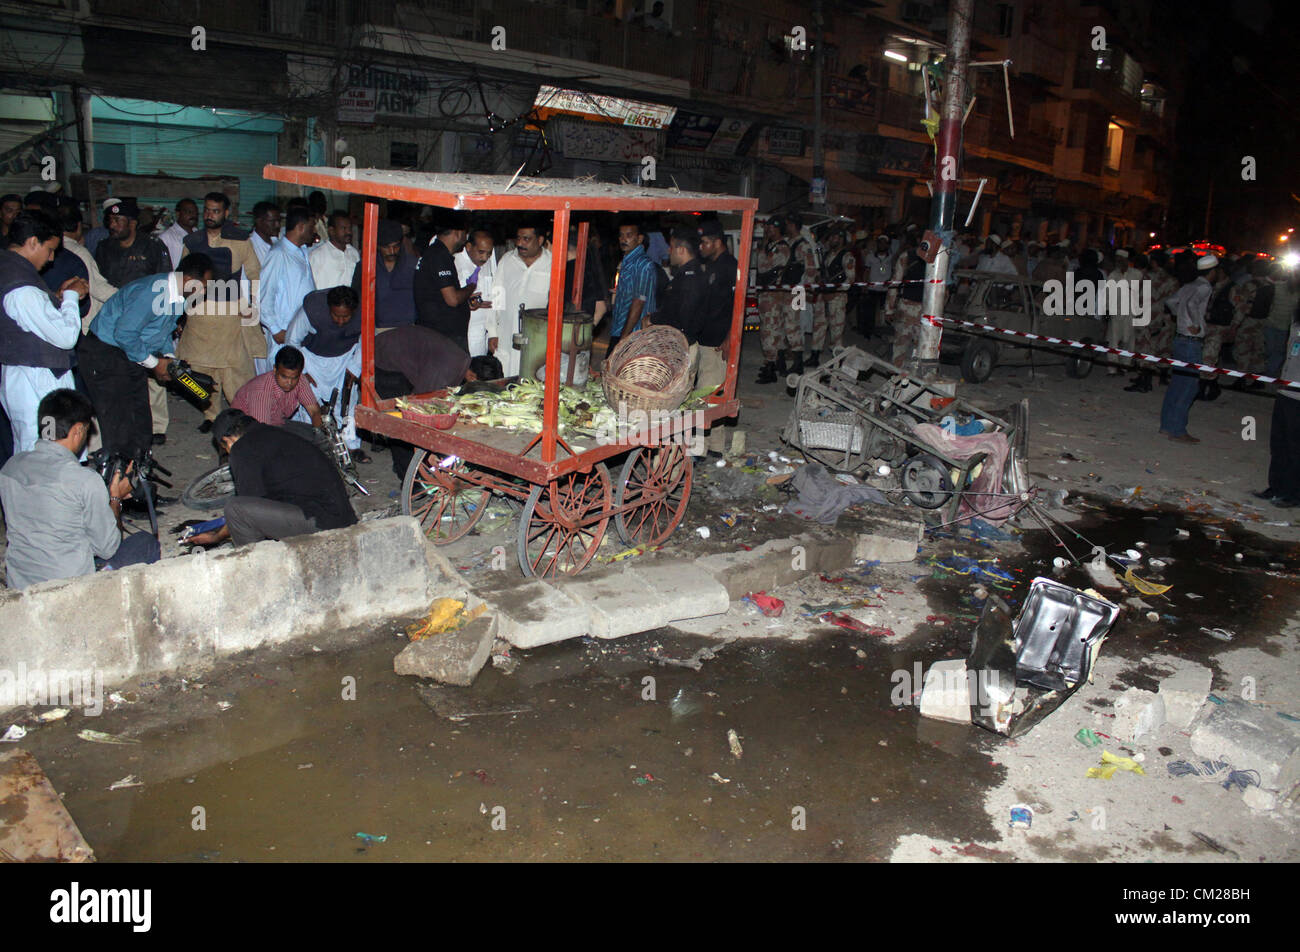 Karachi, Pakistan. 18 septembre, 2012. Les responsables de la police d'examiner le site d'une explosion près de la résidence des musulmans bohri et centre communautaire à Karachi le 18 septembre 2012. au moins 8 personnes ont été tuées et plusieurs autres ont été blessés lorsque plantés deux bombes ont explosé. Banque D'Images